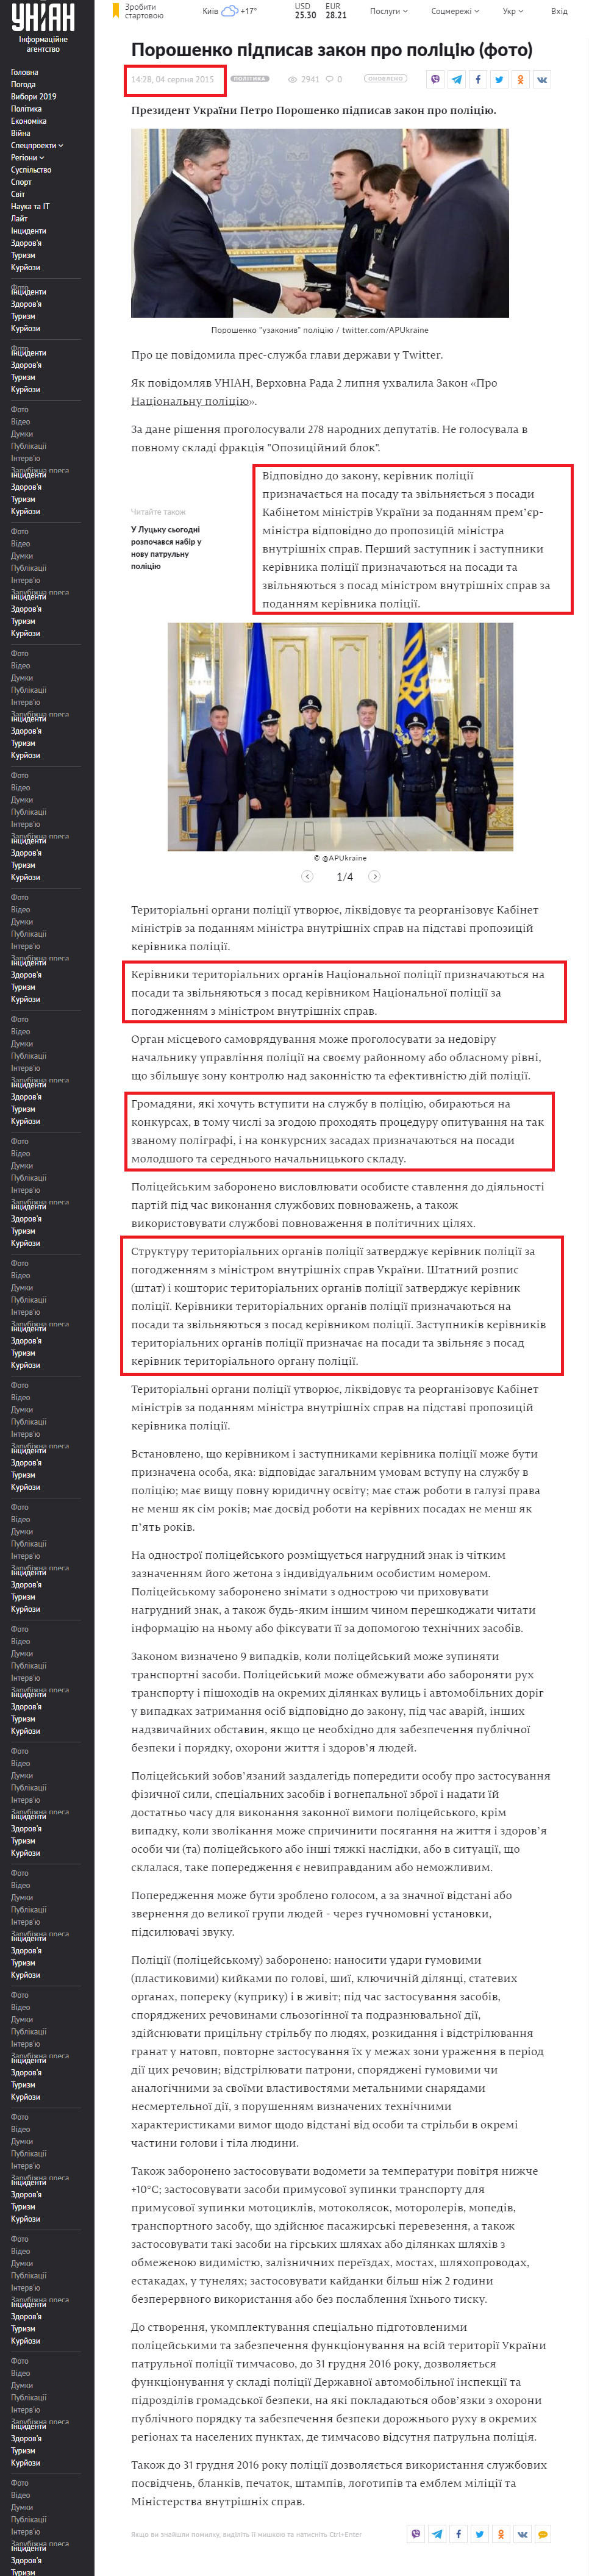 https://www.unian.ua/politics/1107966-poroshenko-pidpisav-zakon-pro-politsiyu.html